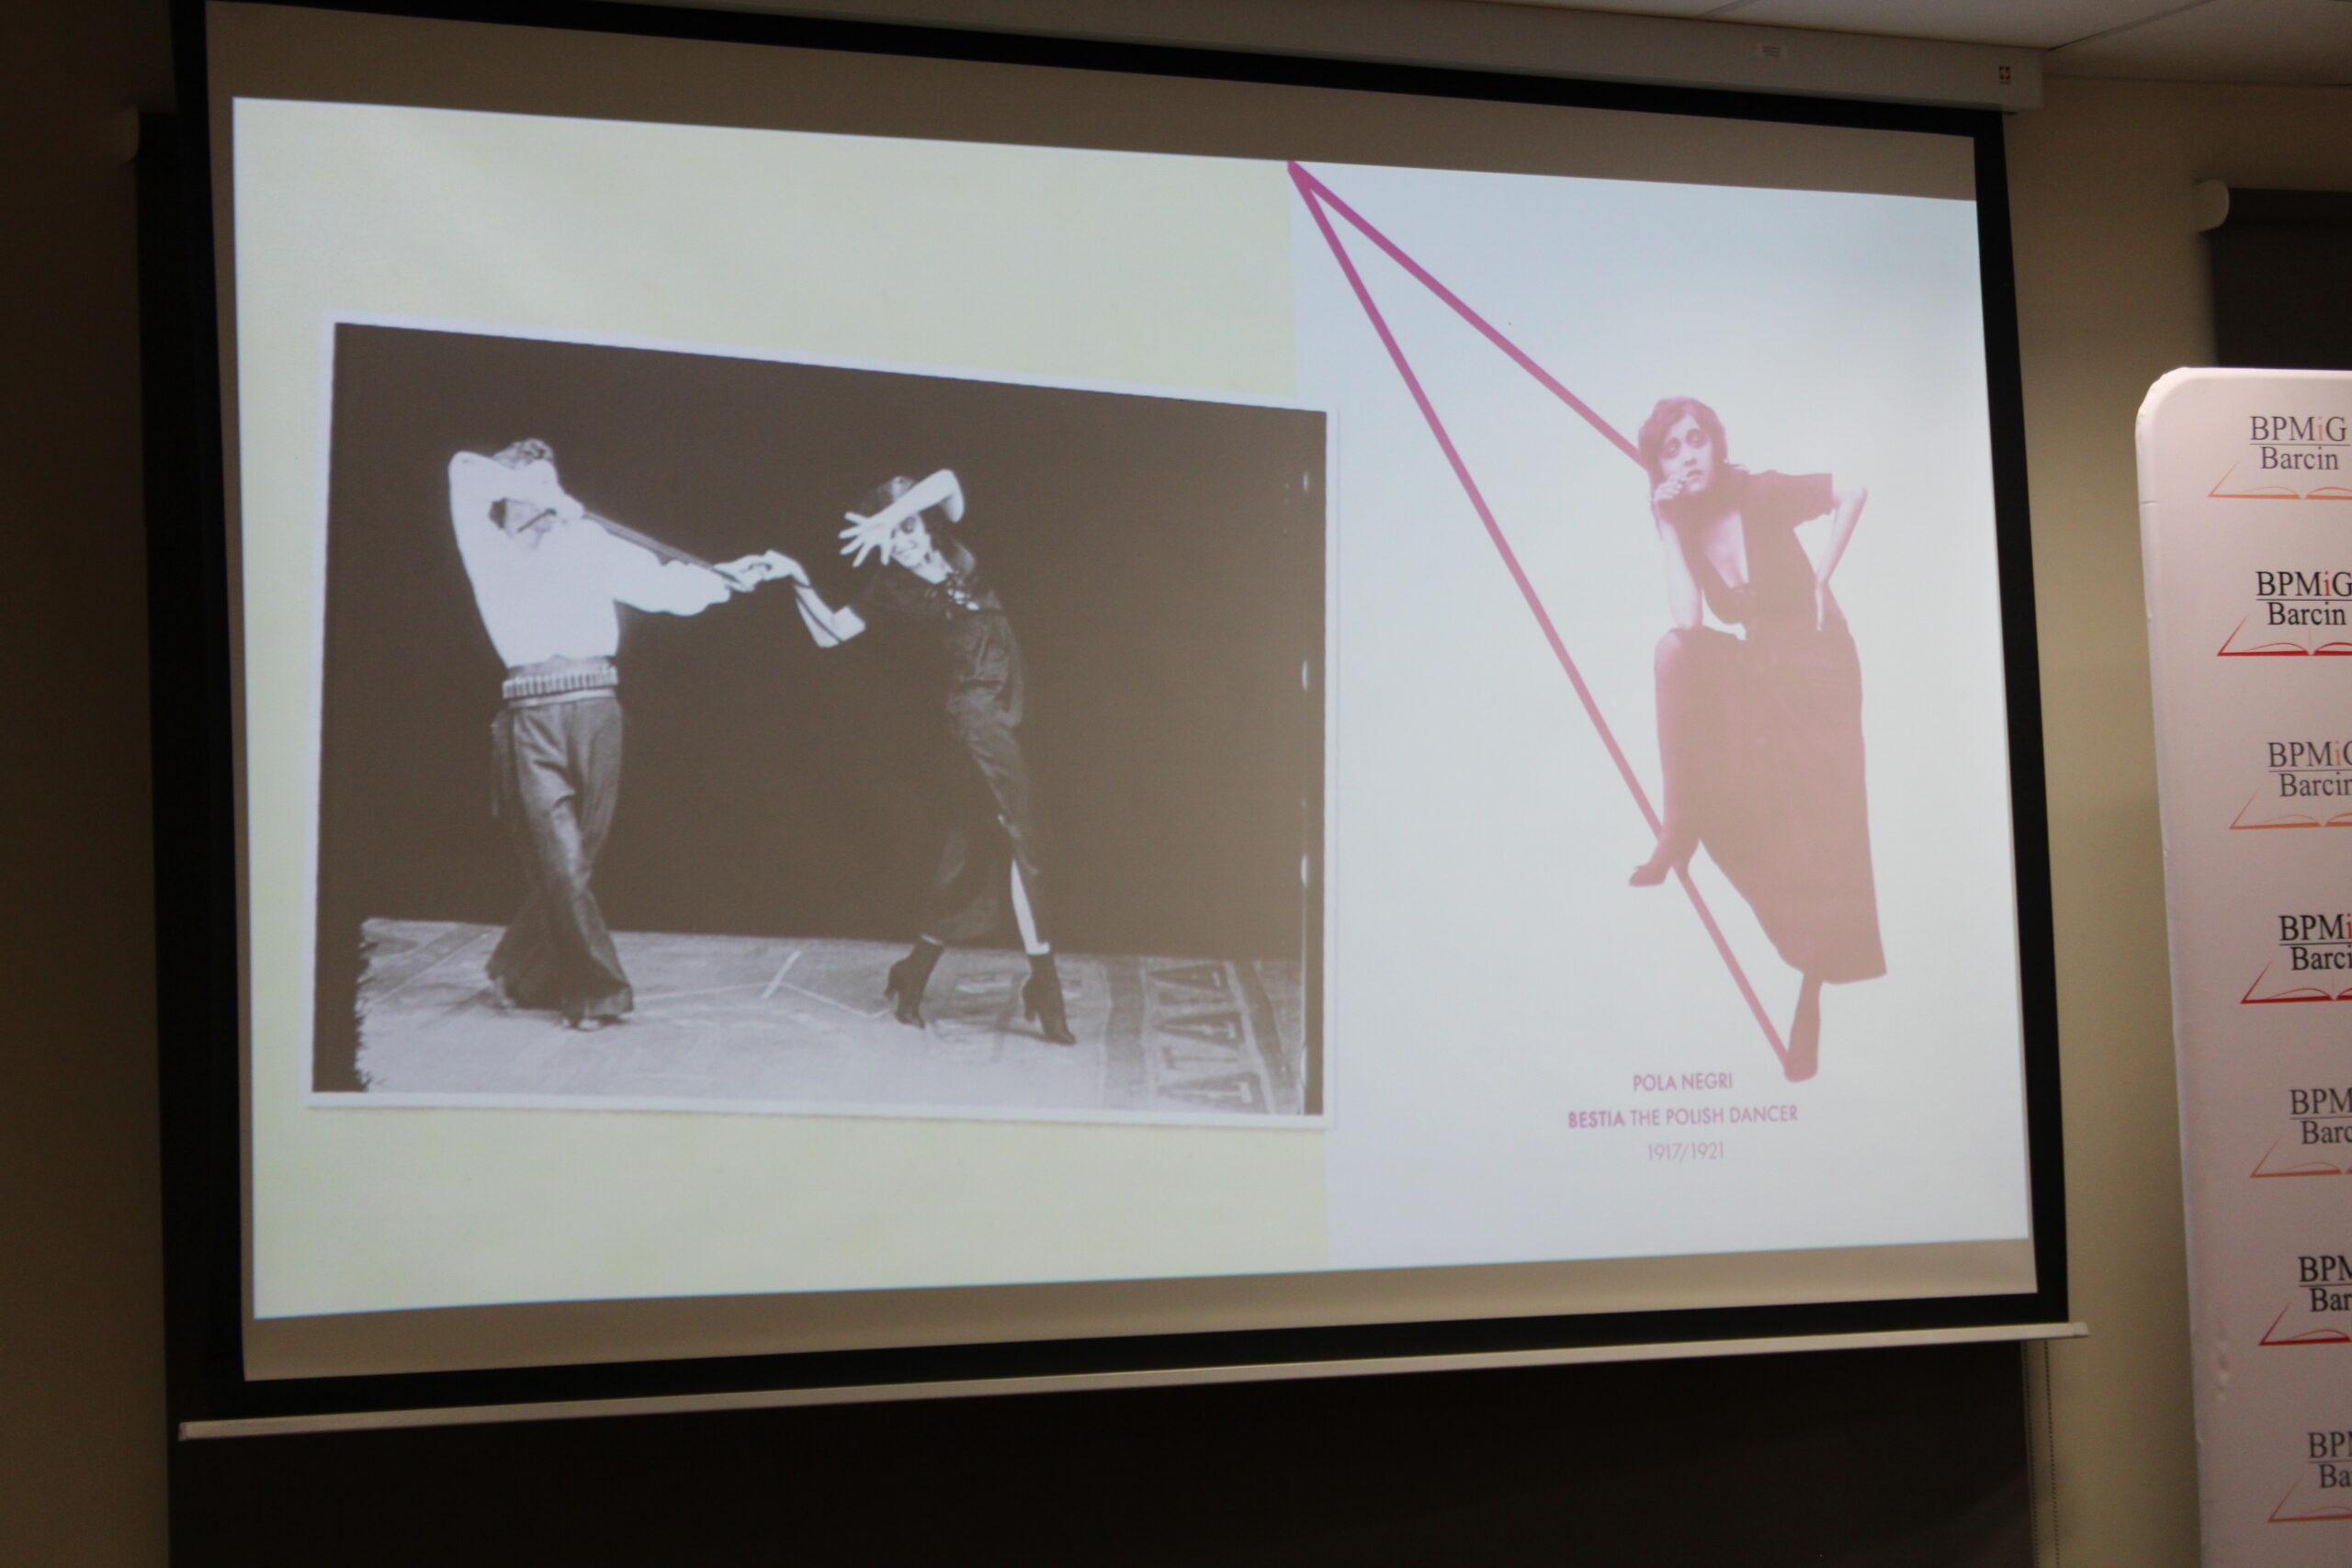 Slajd z prezentacji pokazywanej podczas spotkania, widać czarnobiałe zdjęcie na którym jest kobieta i mężczyzna podczas występu na scenie oraz plakat przedstawiający kobietę w sukni.